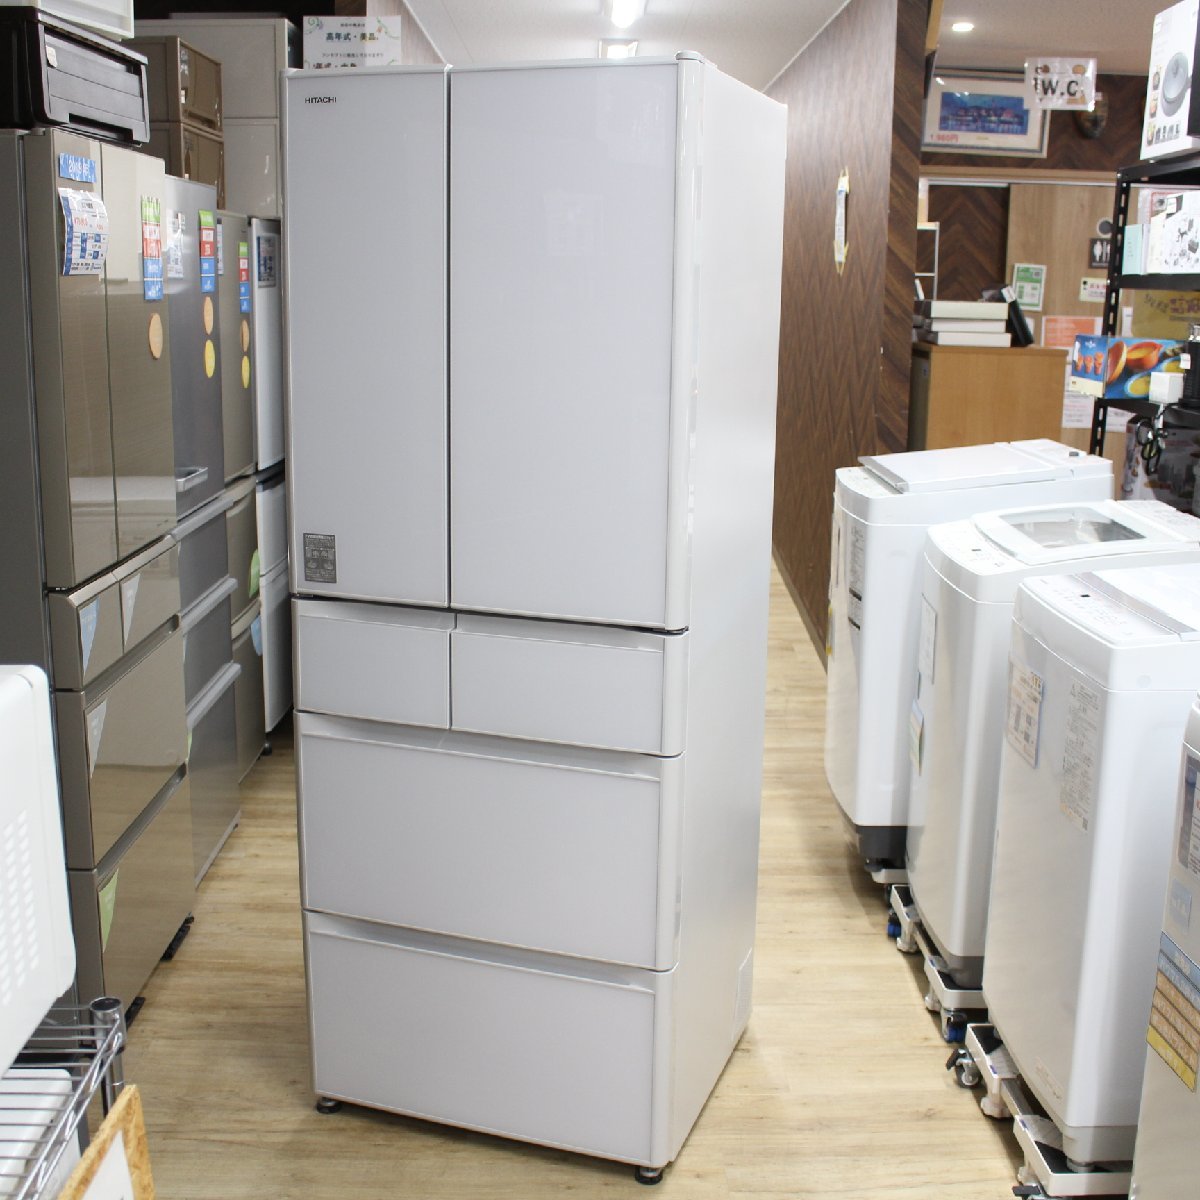 東京都町田市にて 日立 冷蔵庫 R-GS4800H 2018年製 を出張買取させて頂きました。